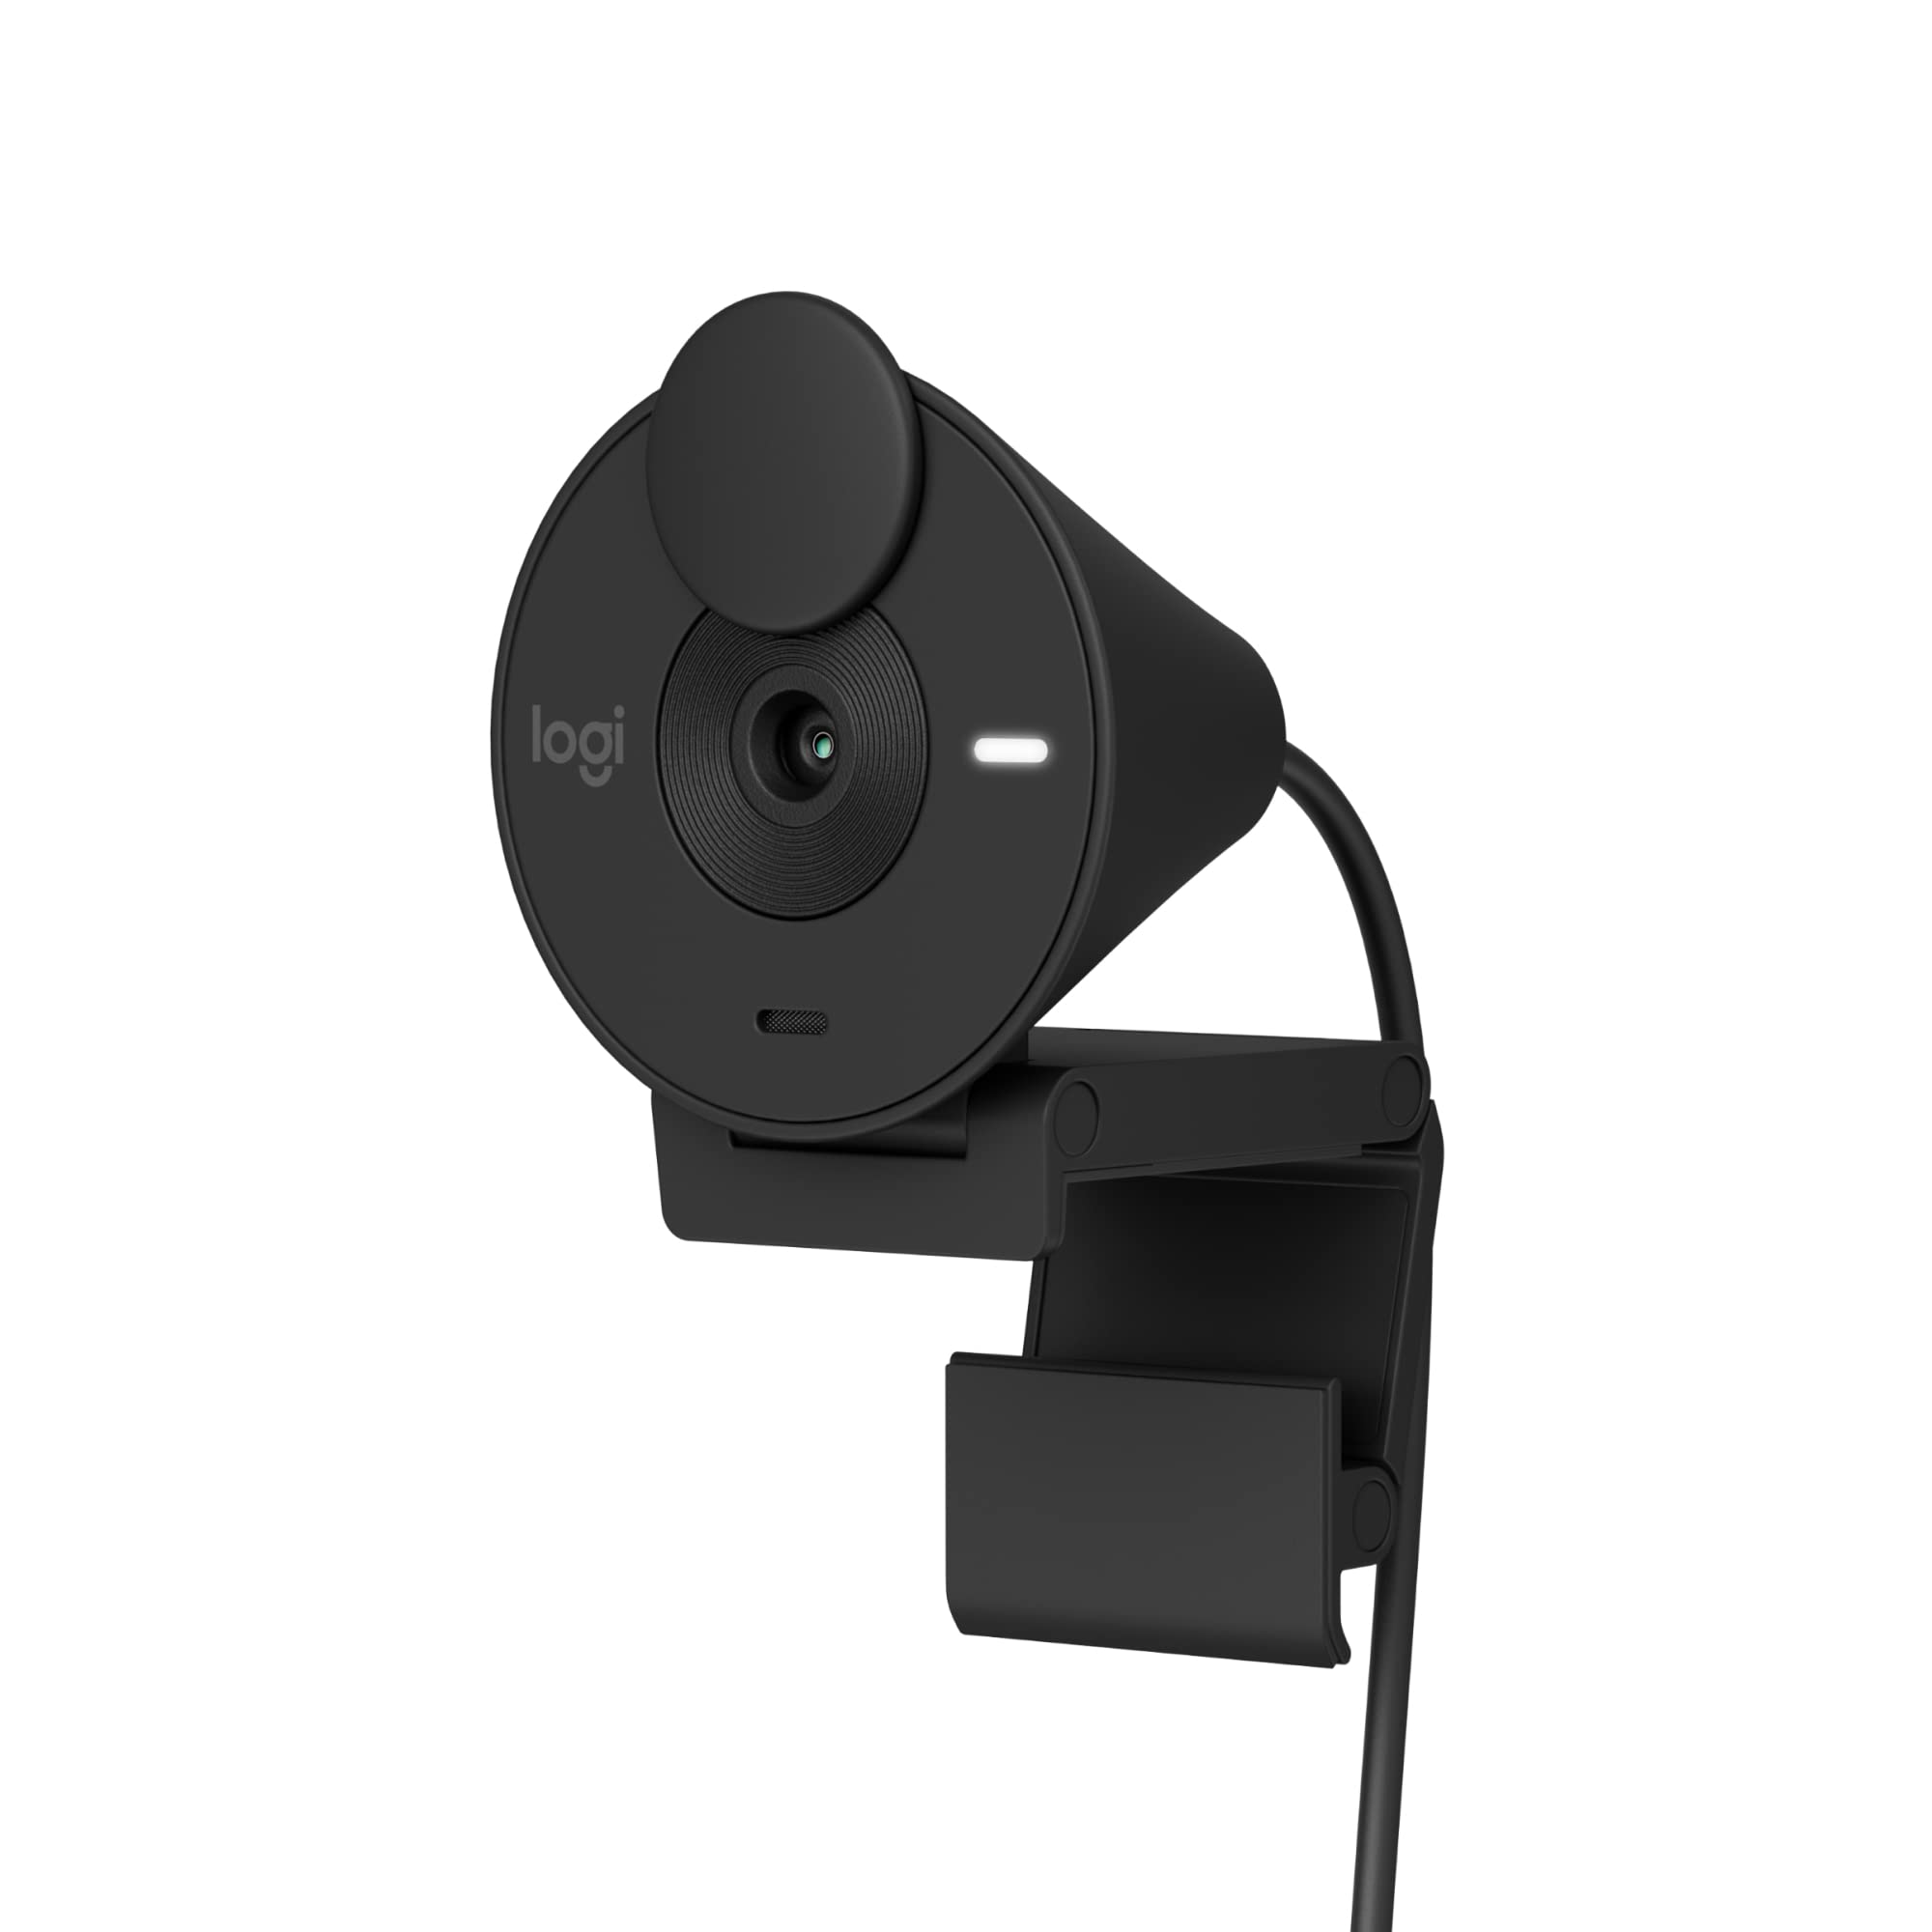 Logitech Brio 301 Full HD Webcam with Privacy Shutter - $59.99 + F/S - Amazon